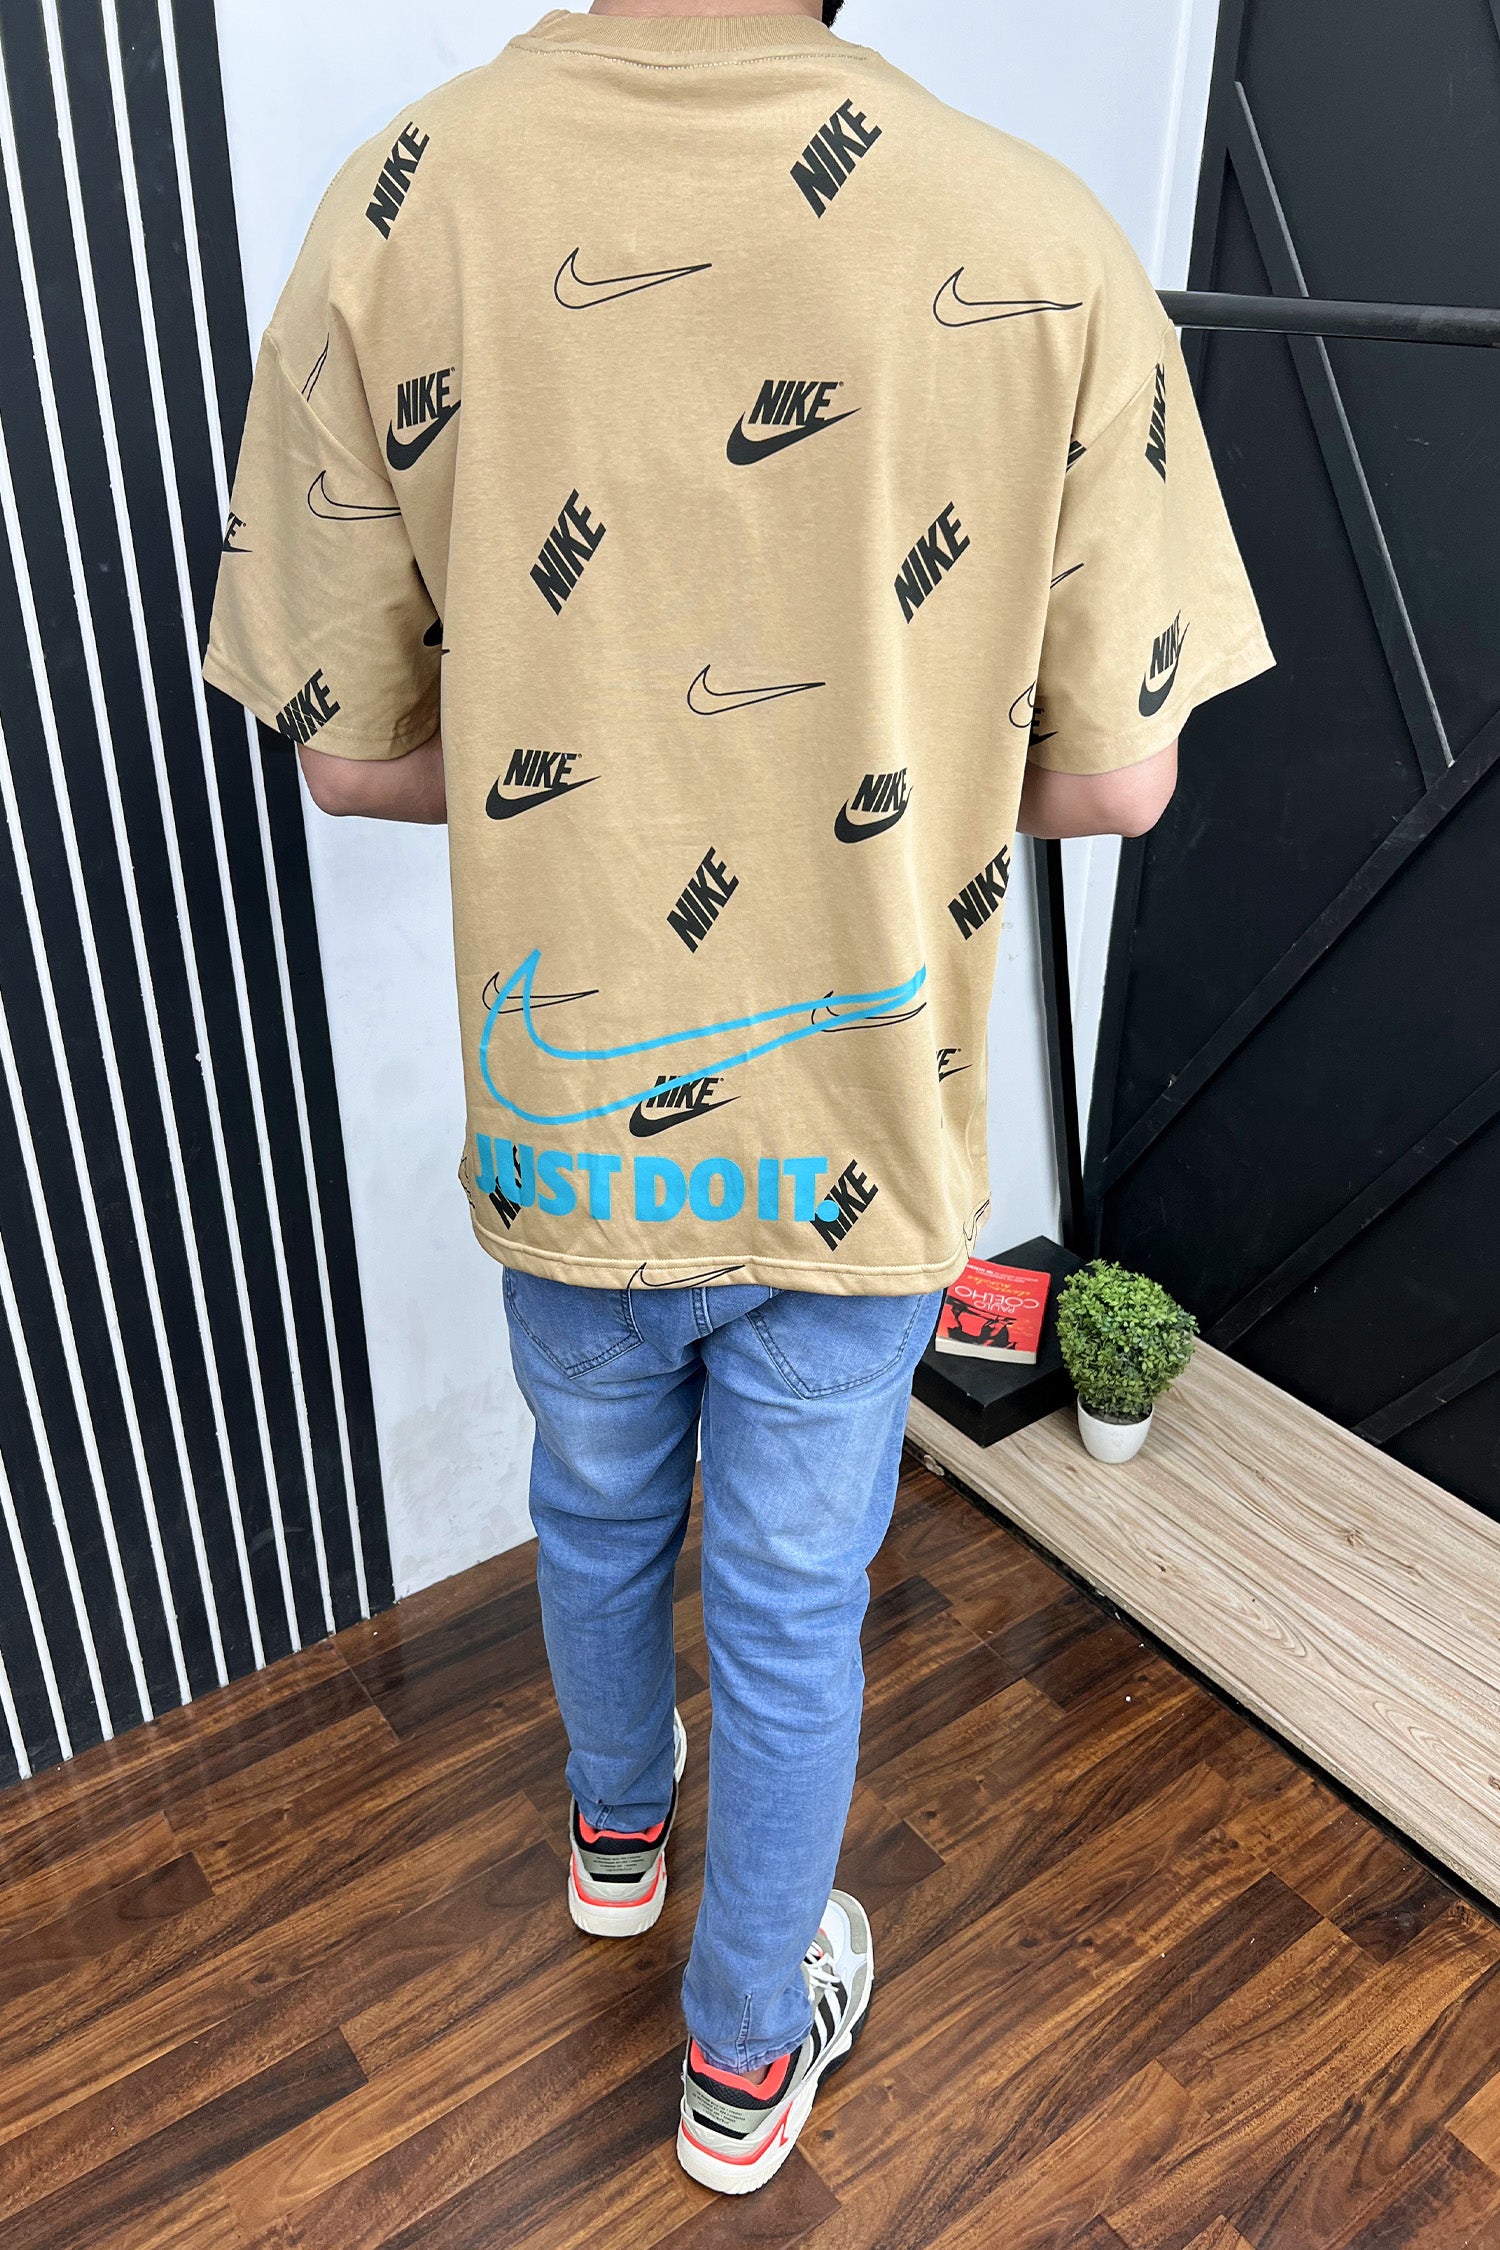 Nke All Over Design Oversized T-Shirt